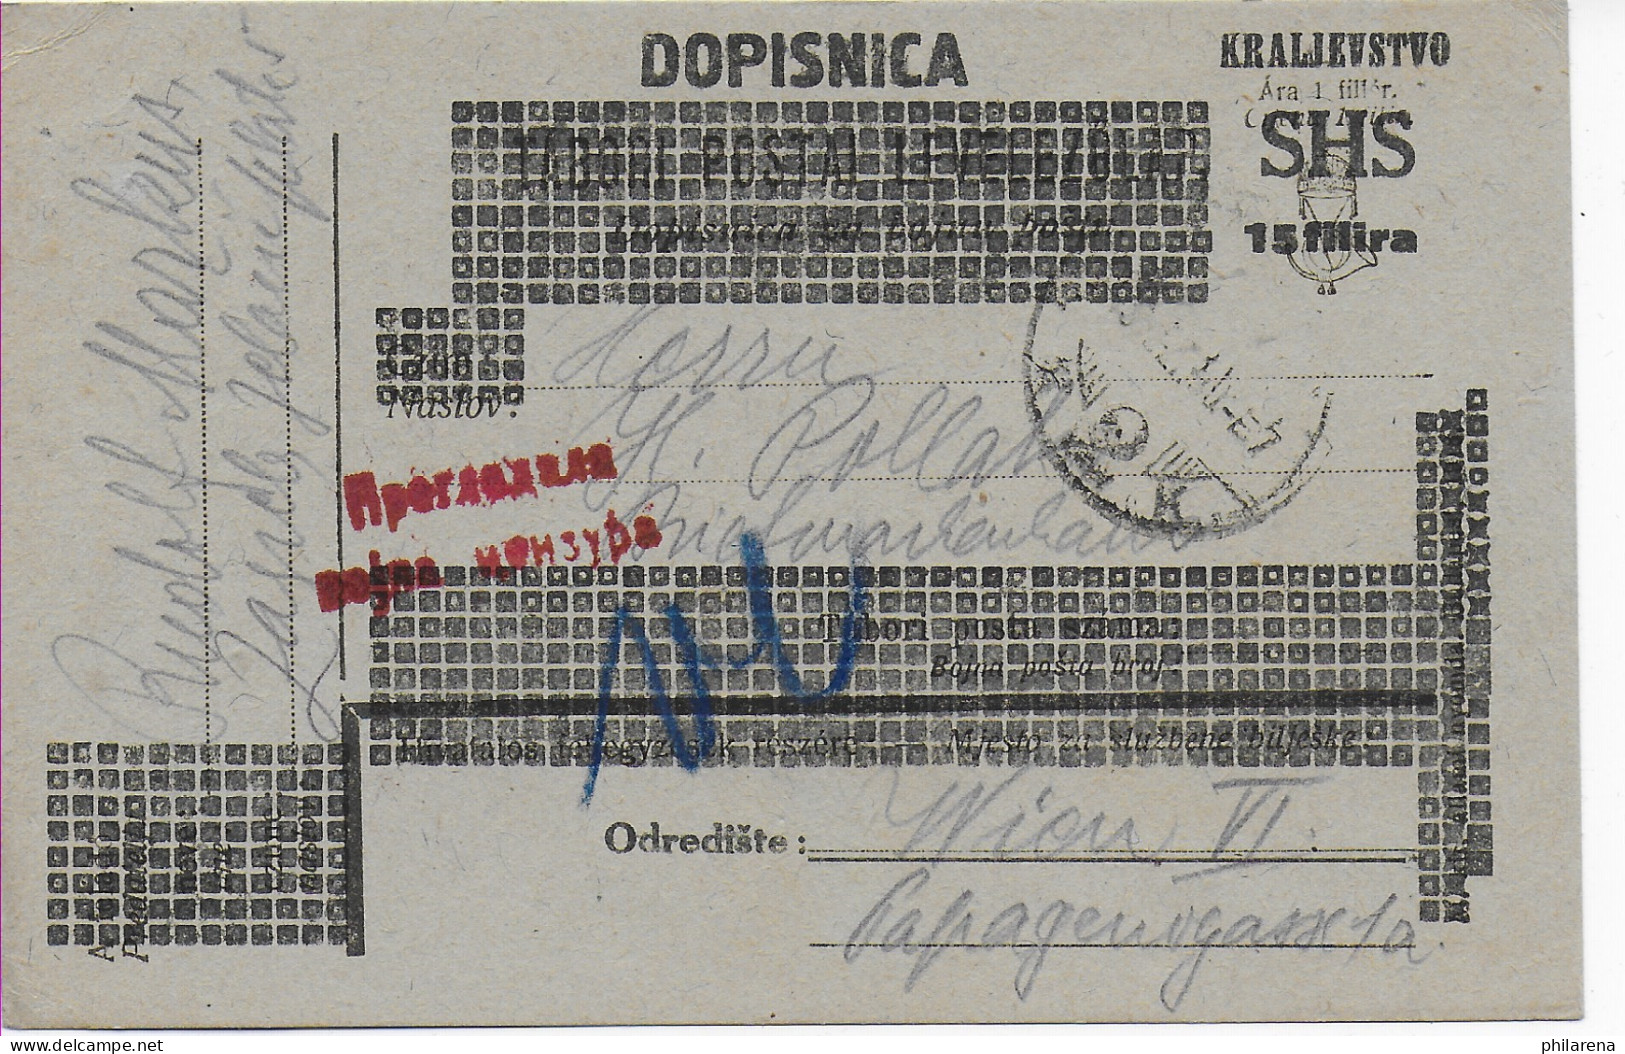 Postkarte Dopisnica Kralievstvo SHS Von Zagreb Nach Wien, 1919 - Kroatien